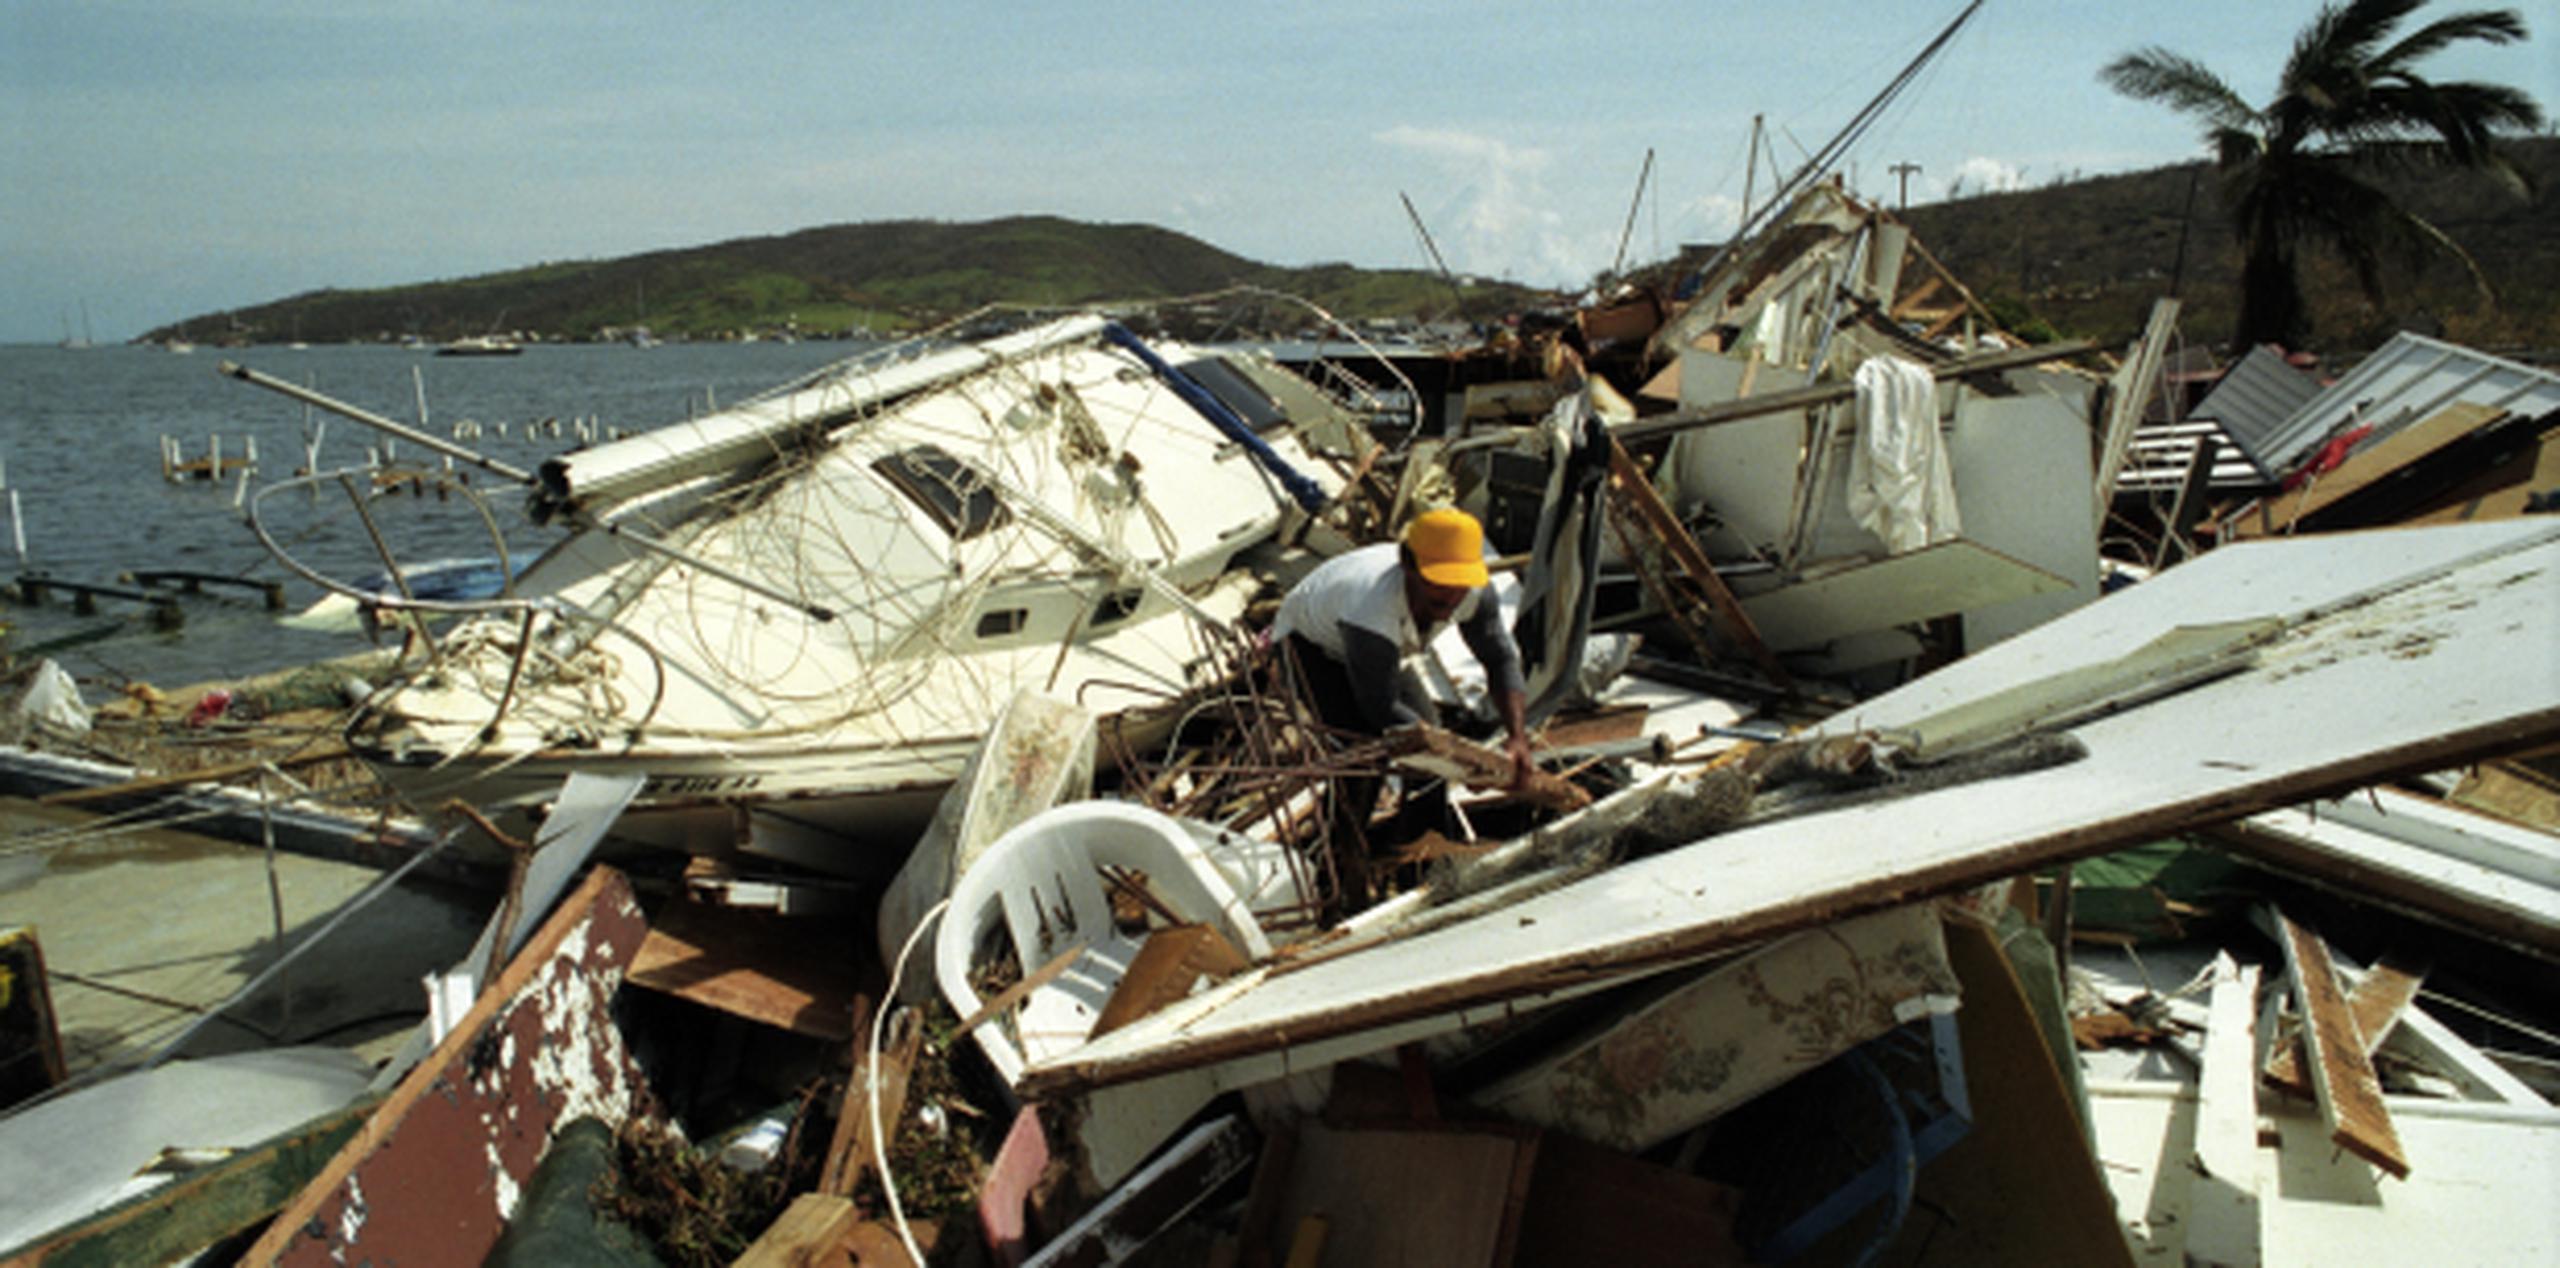 El sistema llegó con vientos superiores a las 100 millas por hora que arrancaron cientos de techos de hogares. (Archivo)